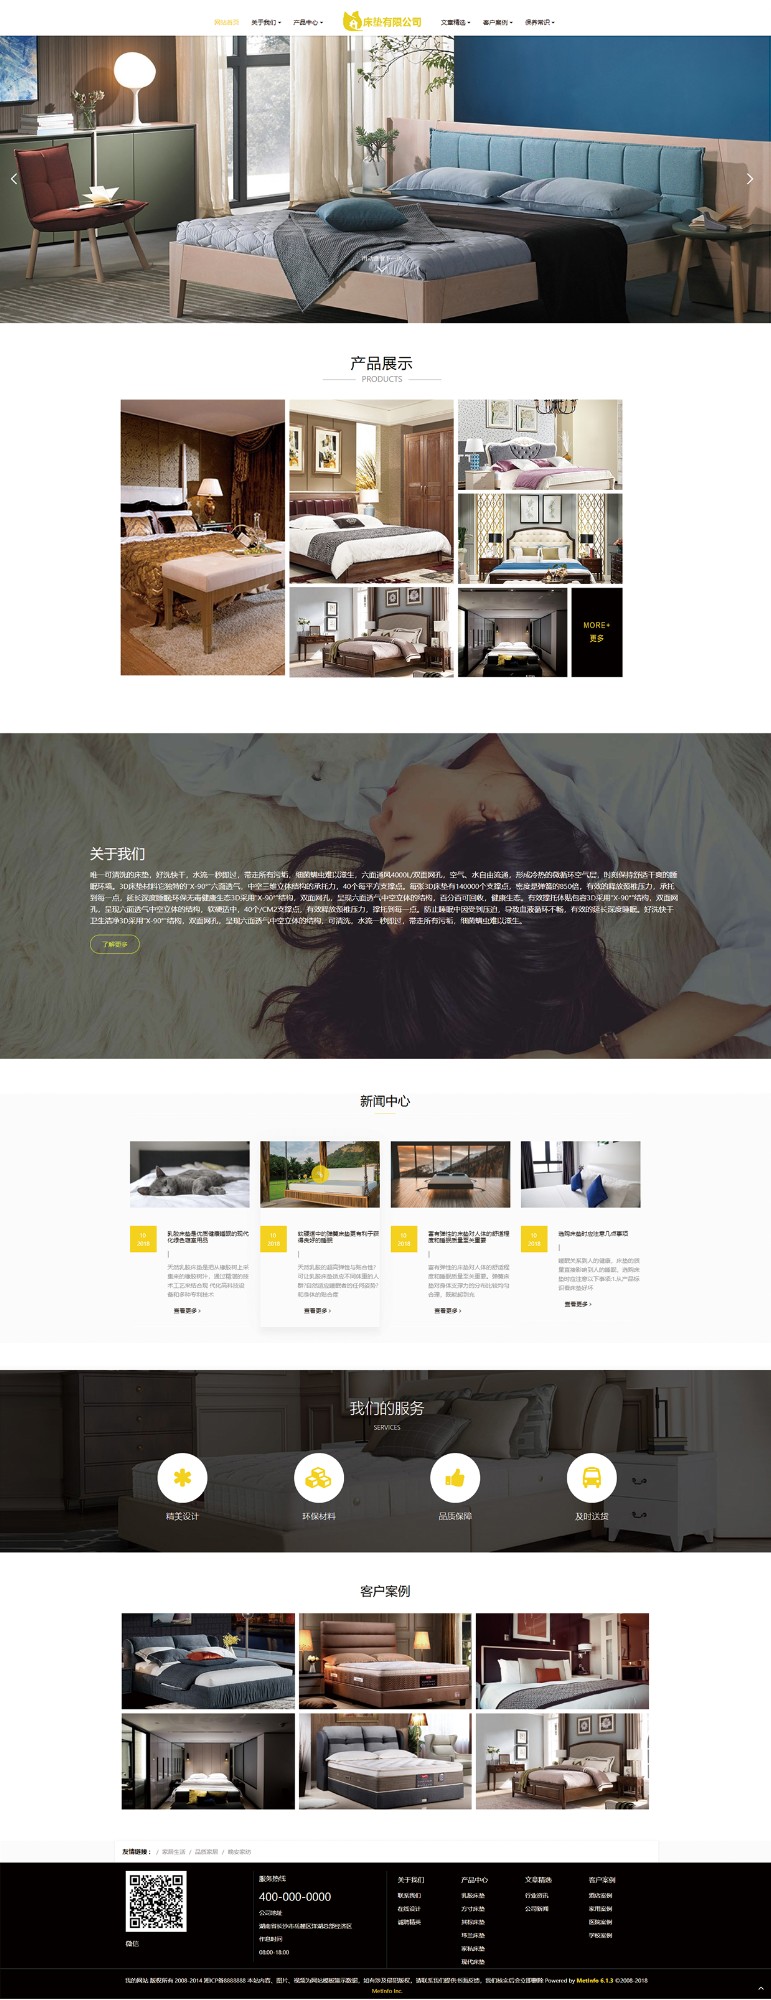 床垫公司网站